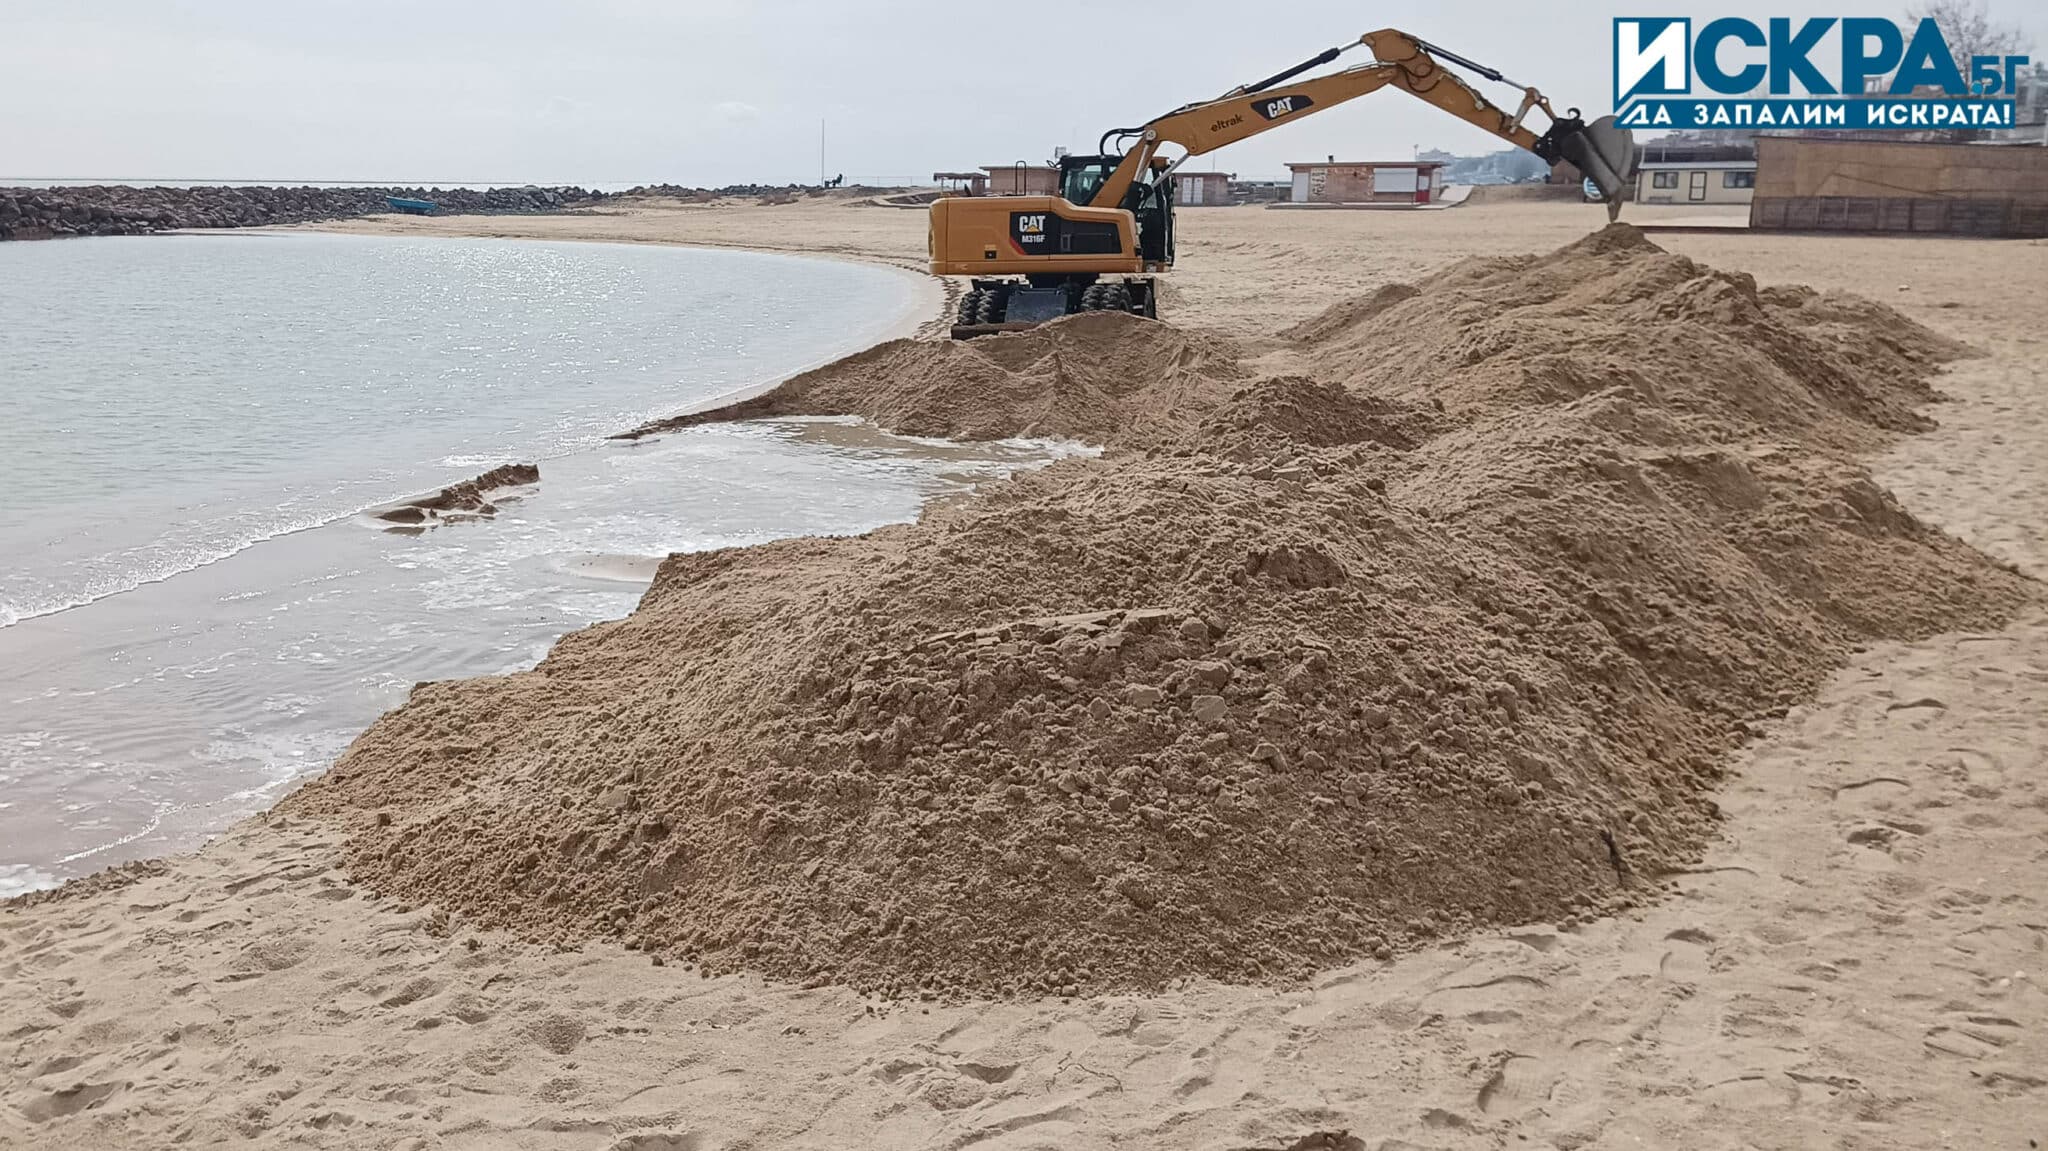 Багер копае и вдига диги на плаж Аурелия“, разположен между